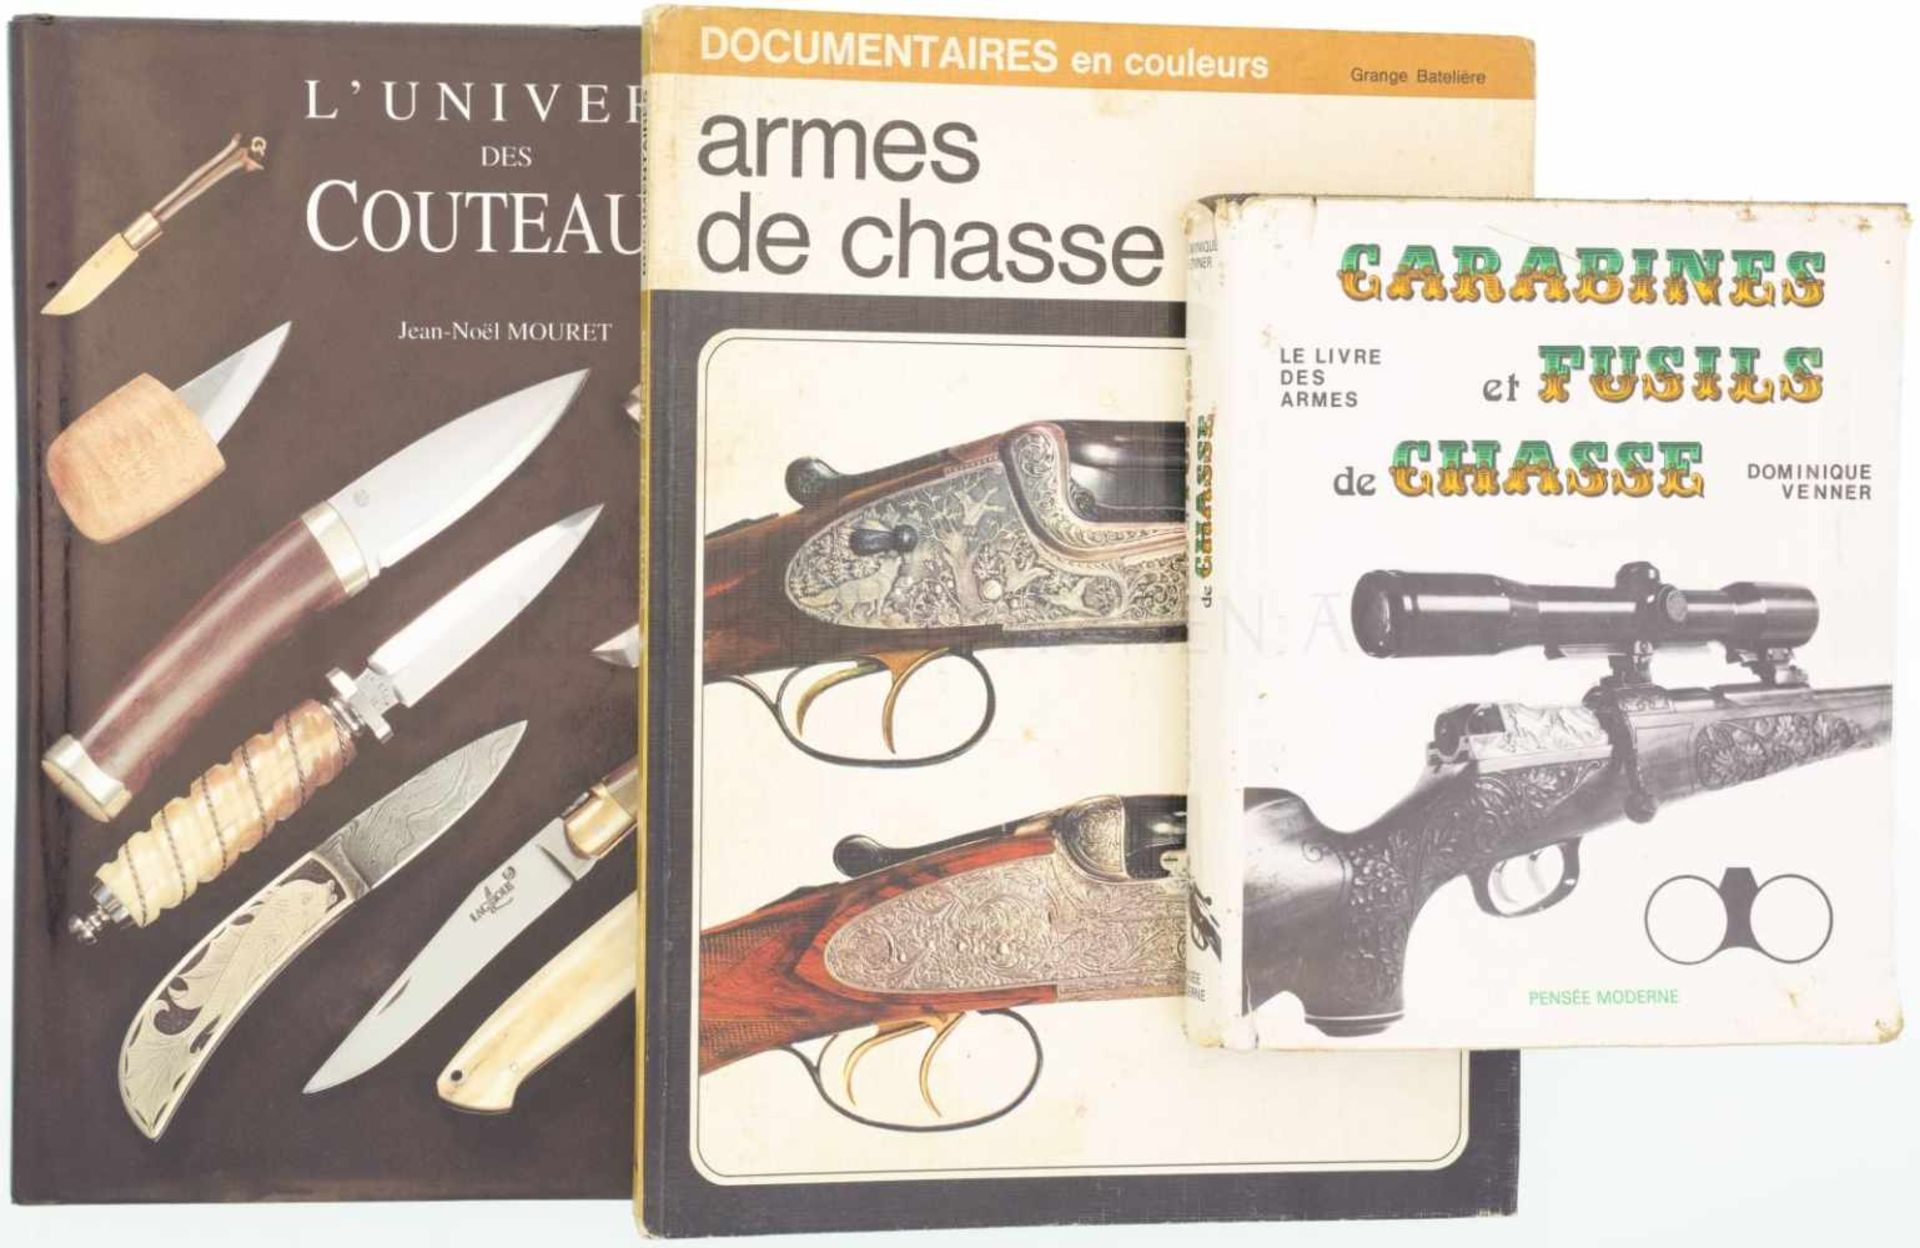 Konvolut von 3 Büchern 1. Le livre des armes, Carabines et fusils de chasse, Autor Dominique Venner,